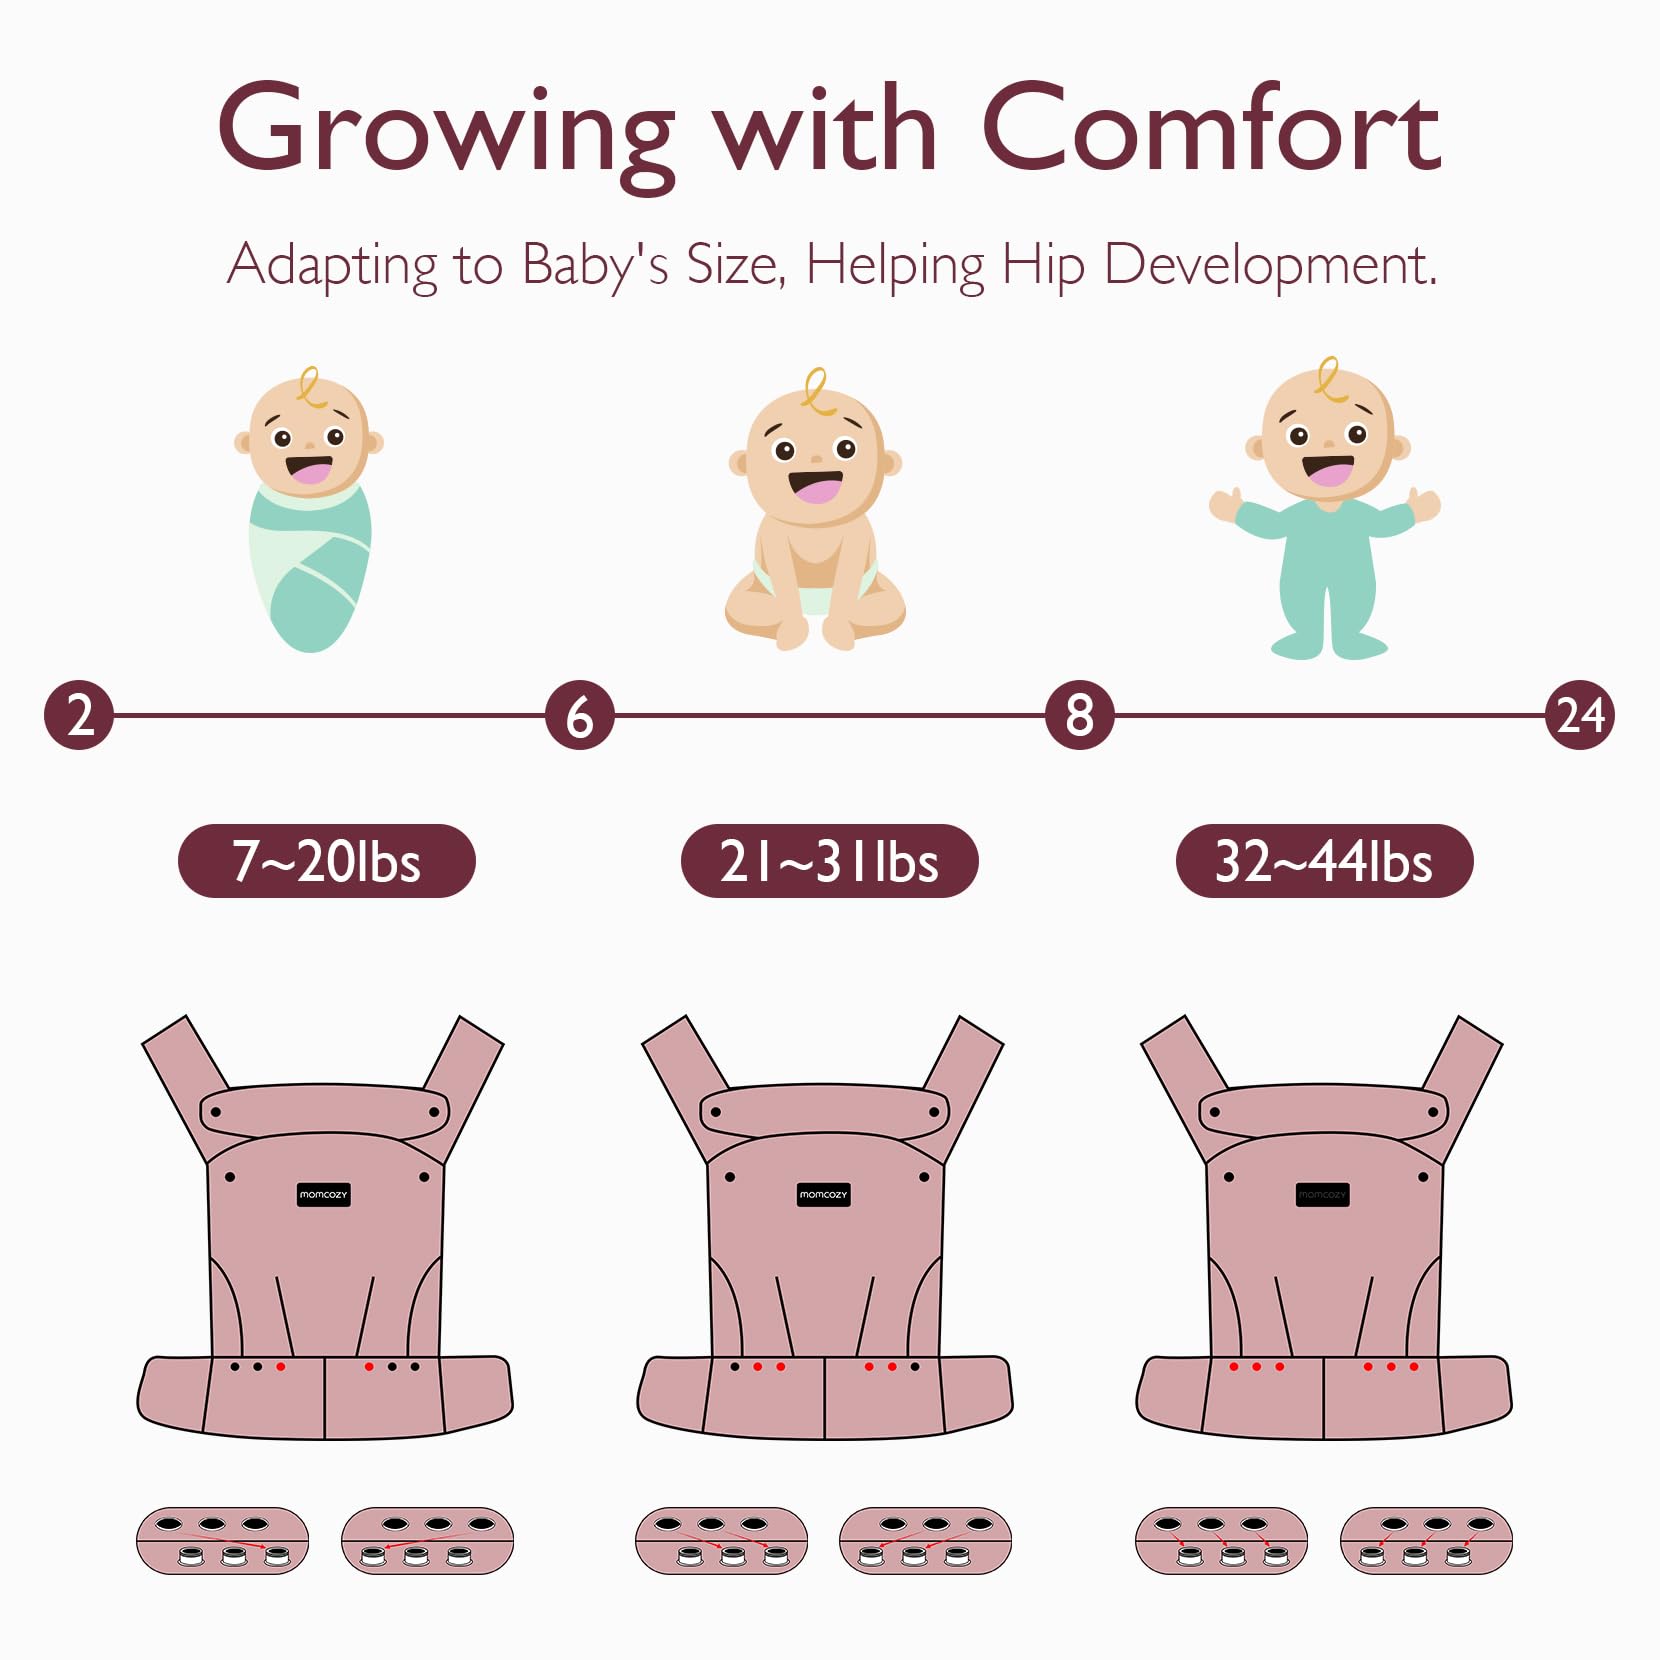 Ergonomisch, gemütlich und leicht - Babytrage für Neugeborene bis Kleinkinder